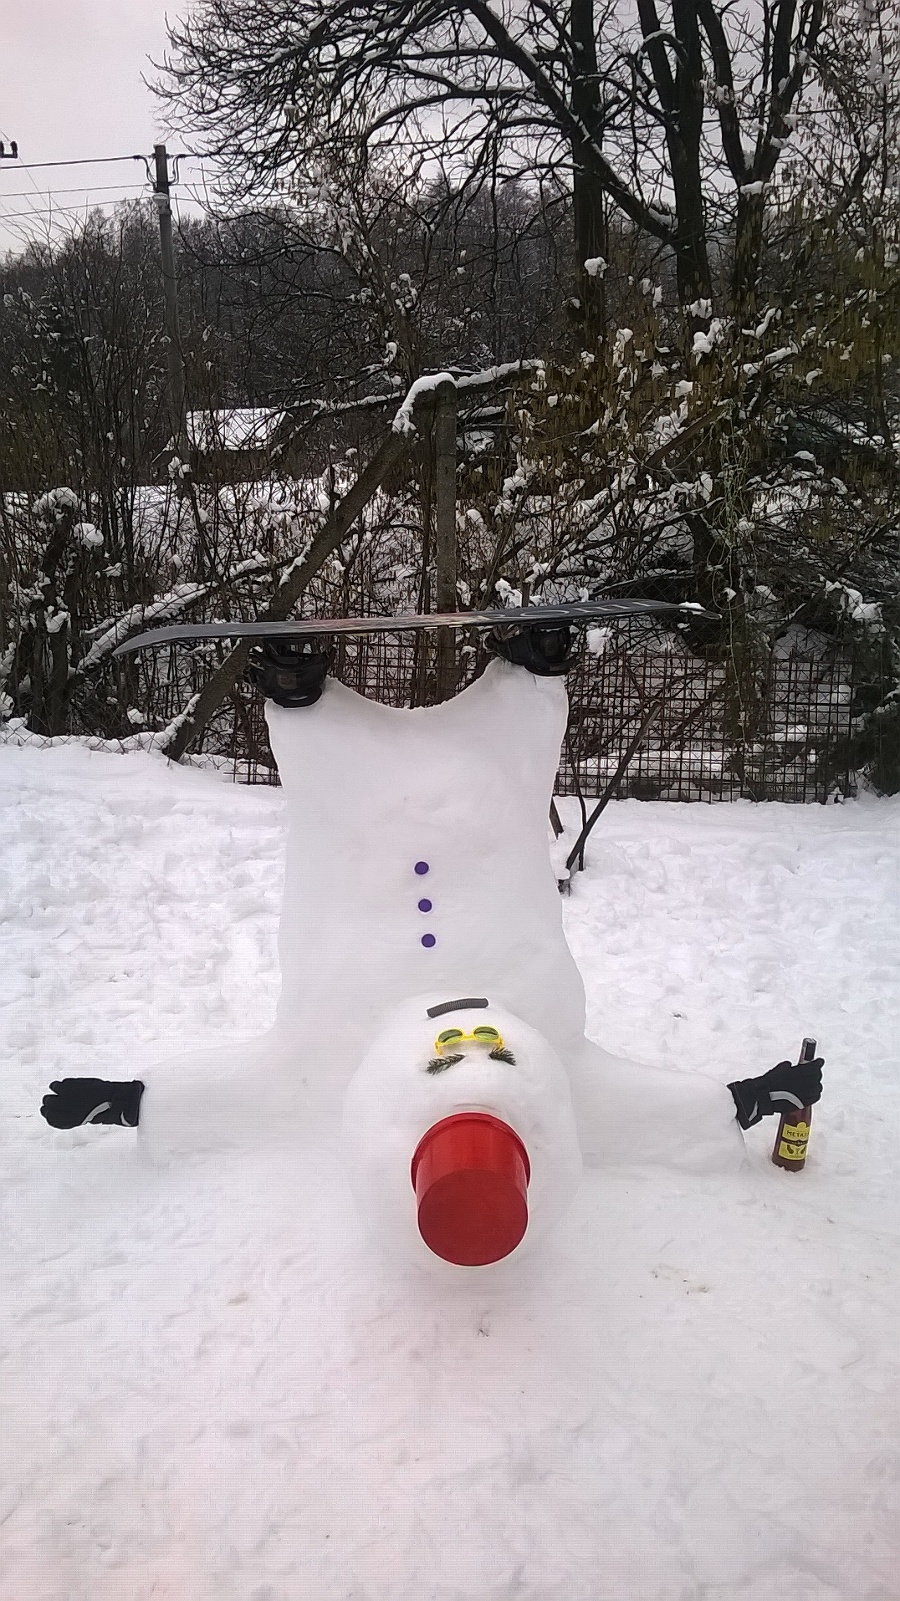 Opitý snehuliak.